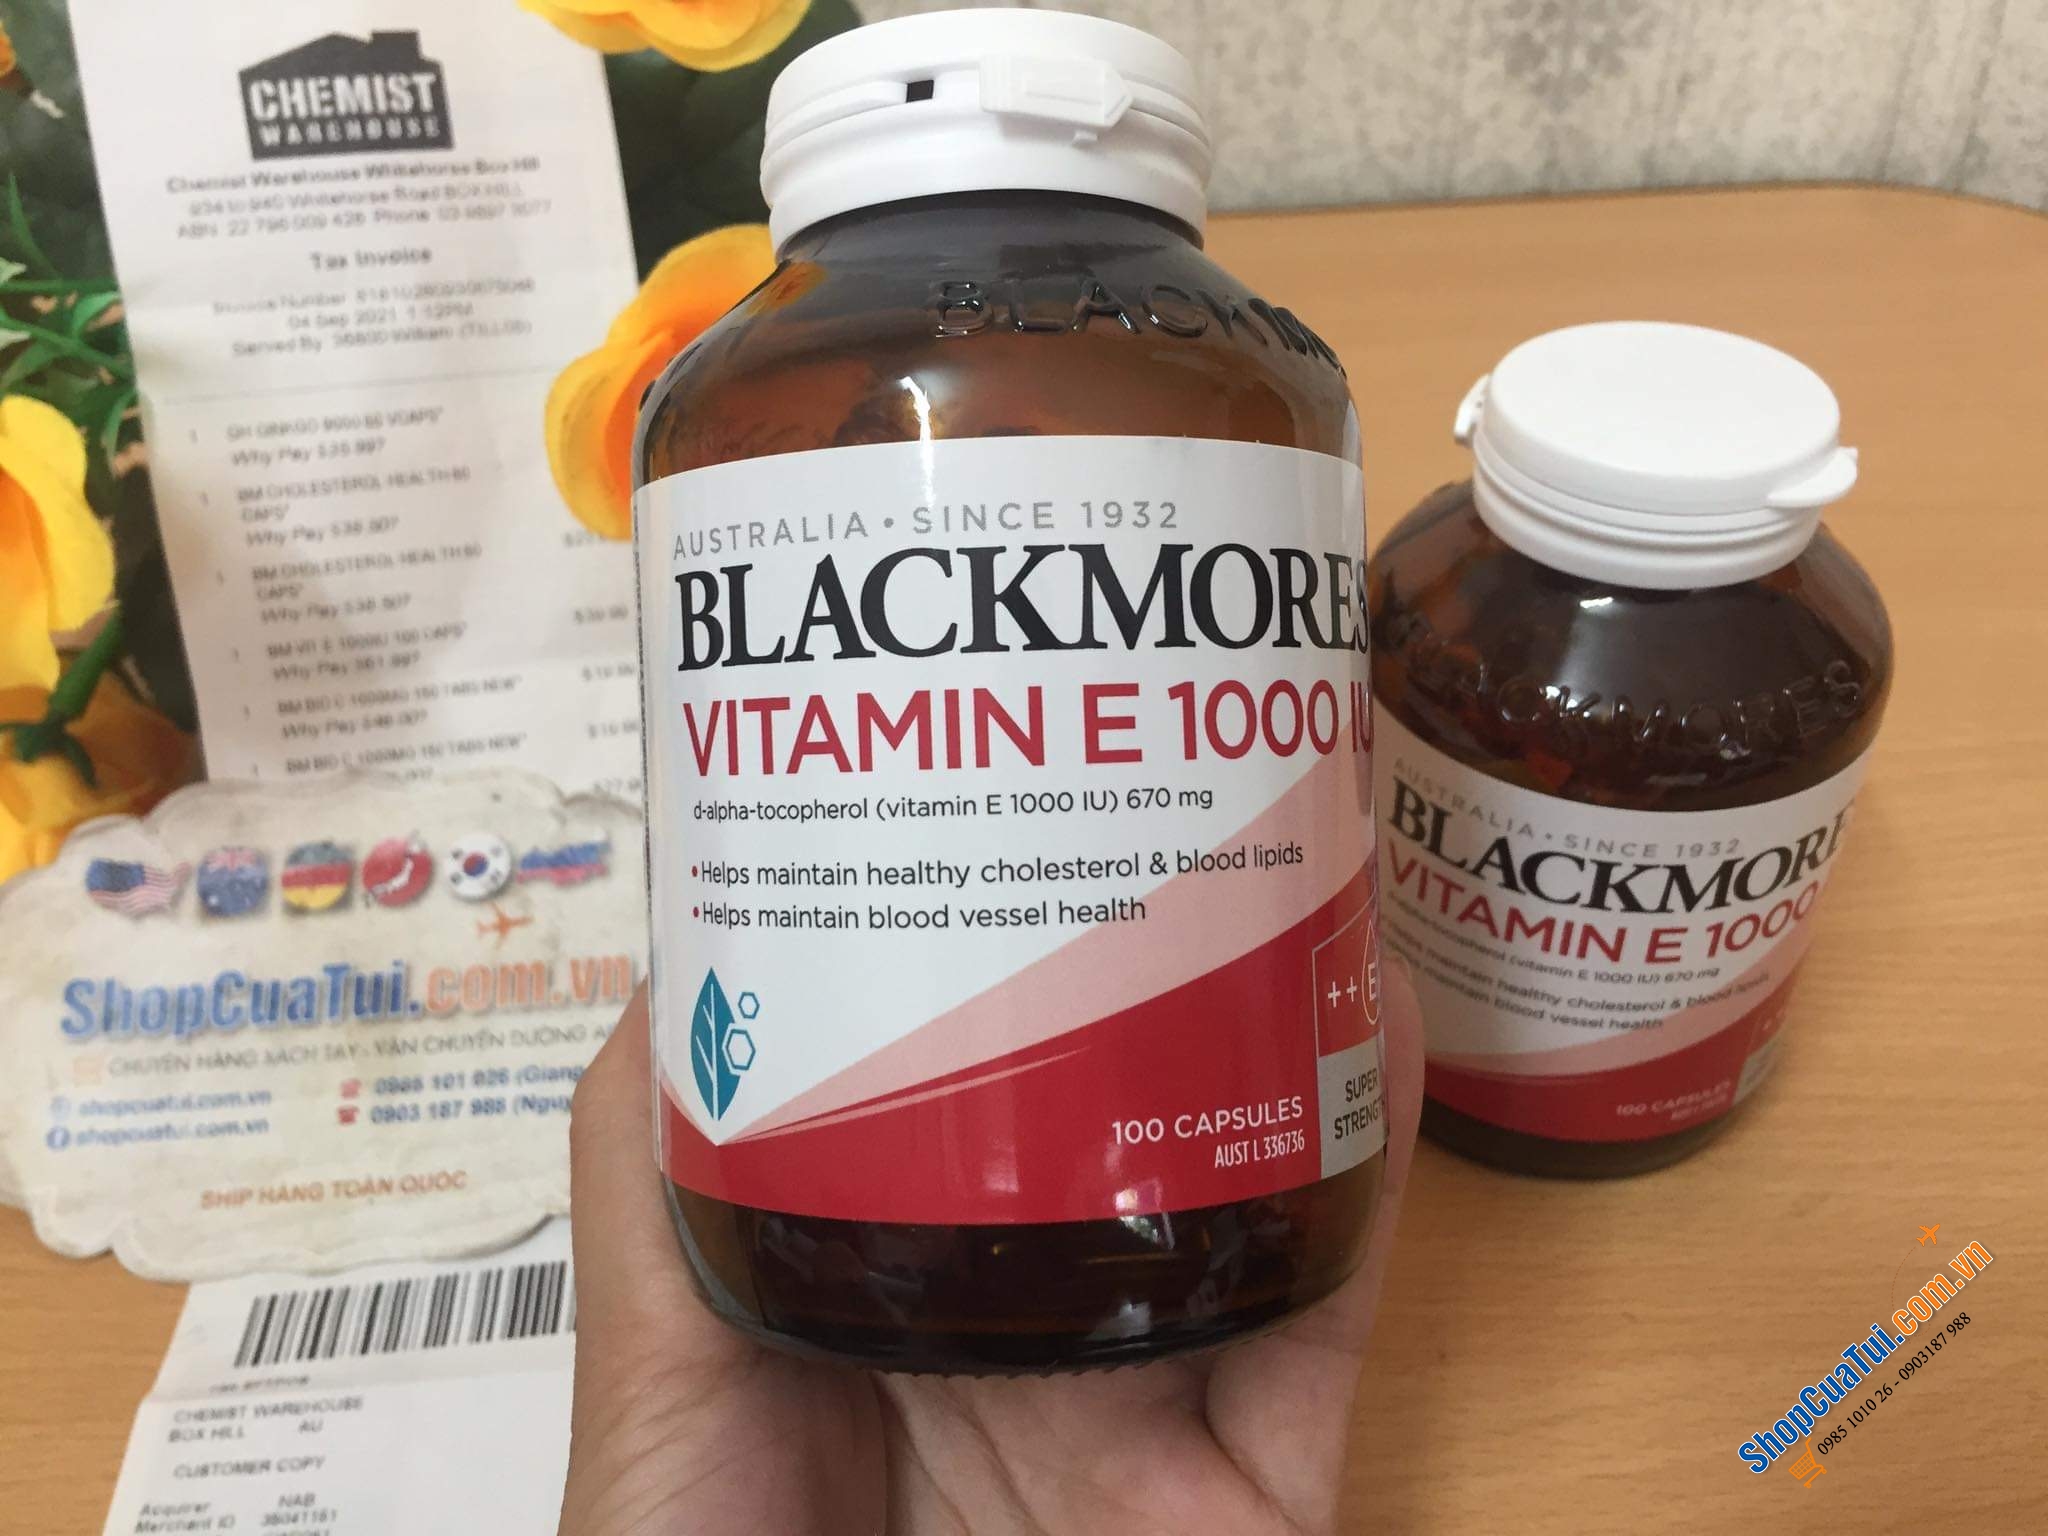 VITAMIN E TỰ NHIÊN BLACKMORES NATURAL E 1000IU lọ 100 viên - dòng Vitamin E cao cấp nhất của Blackmores